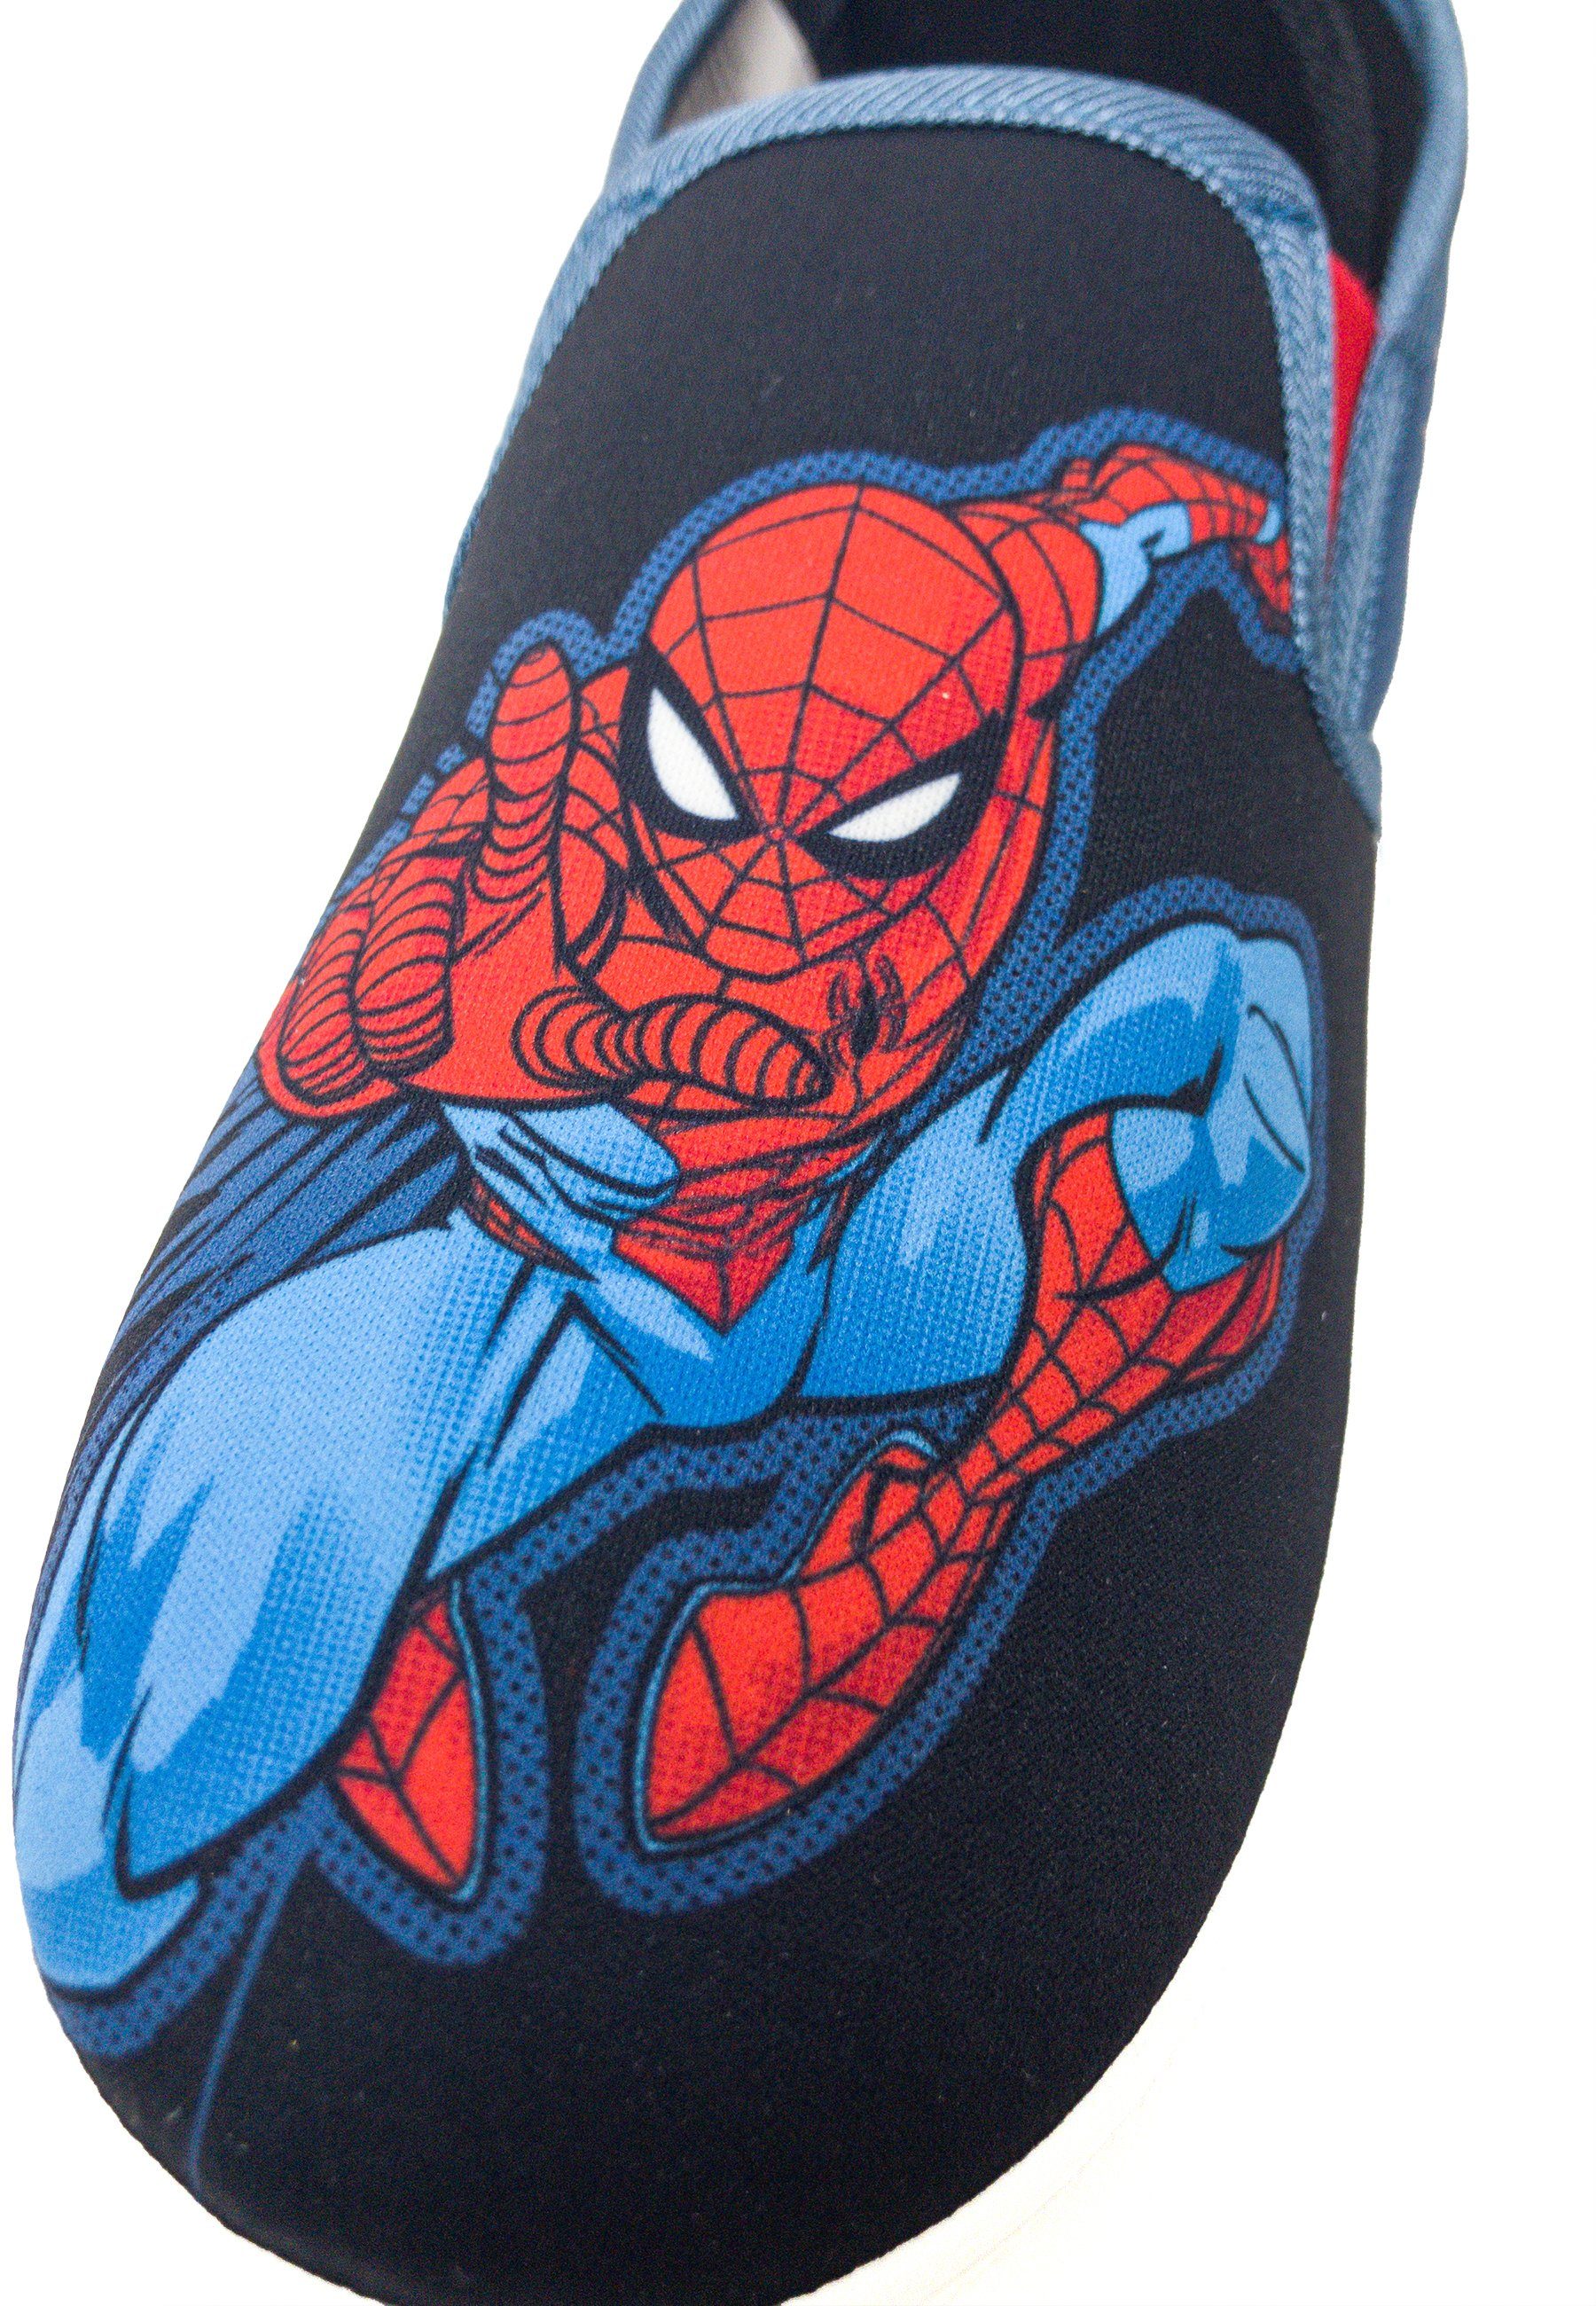 An- Sneaker Slip-On Elastikband. Kids2Go Kids2Go dank Action-Pose Slip-On Einfaches Amazing und Ausziehen Spiderman